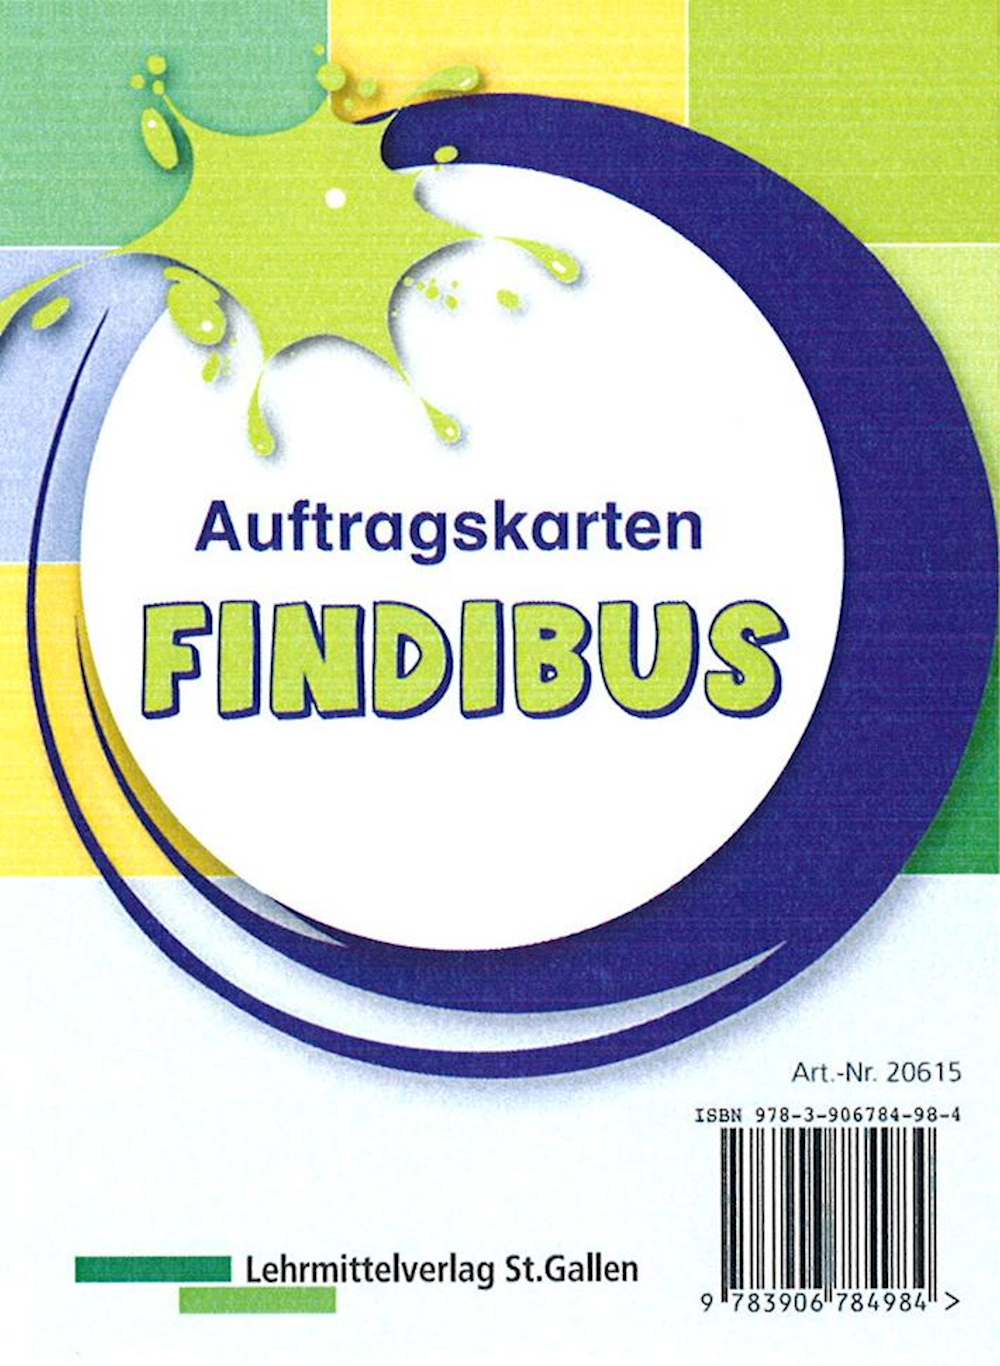 Findibus Auftragskarten